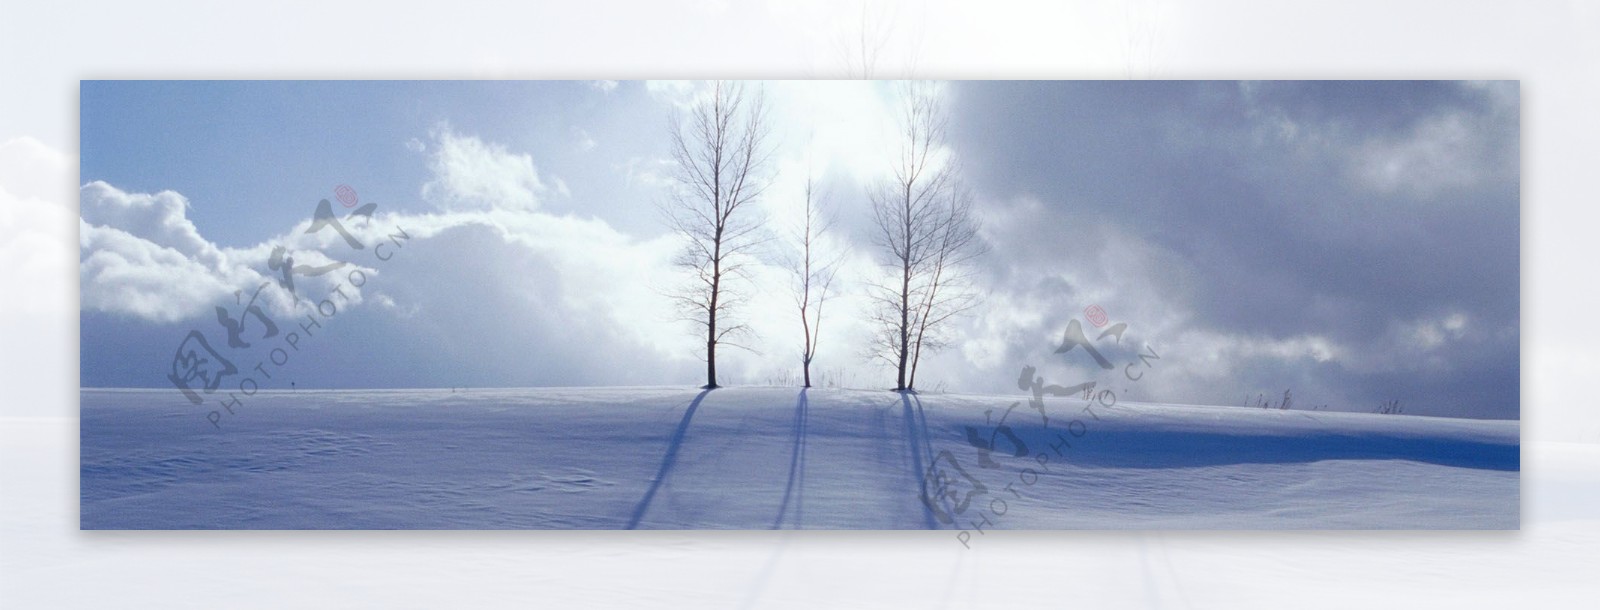 雪景淘宝海报图片背景素材13